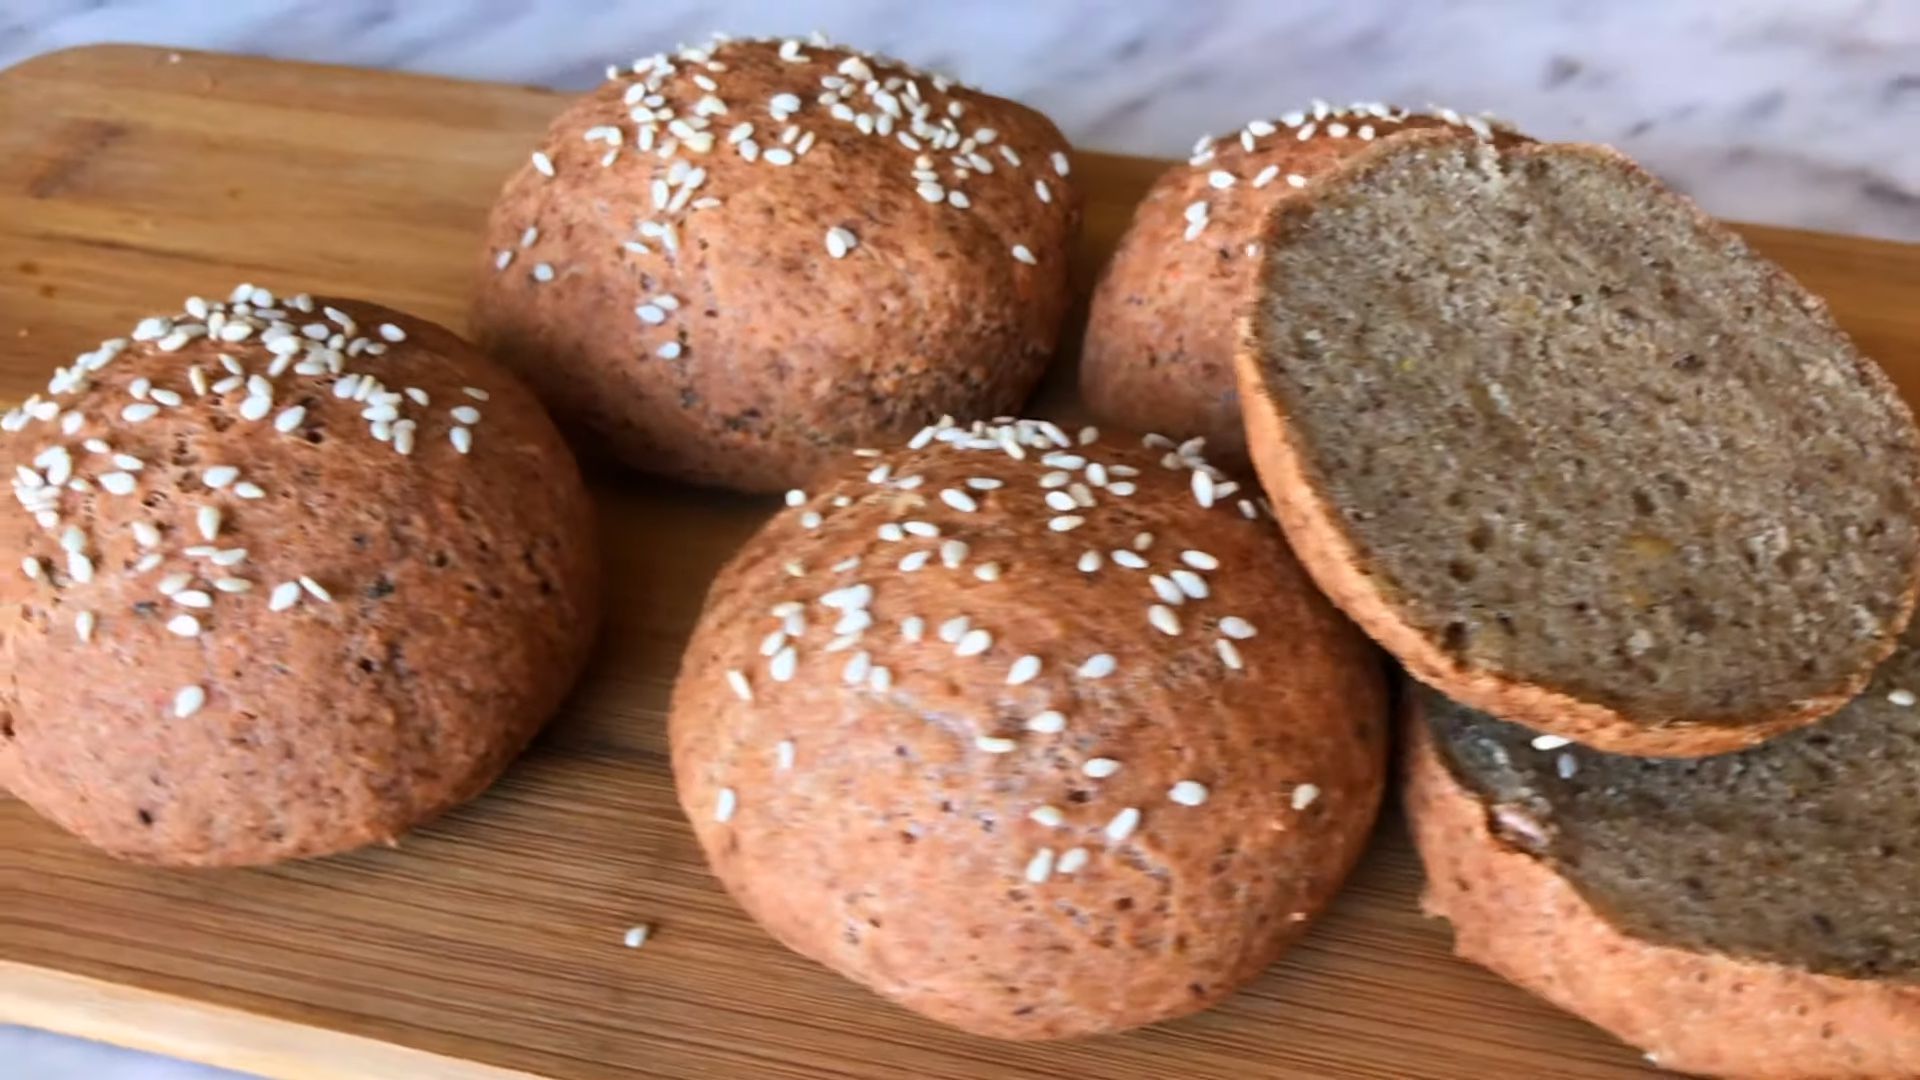 Mercimekli Sebzeli Ekmek Tarifi – Sağlıklı, Lezzetli ve Kolay Yapım